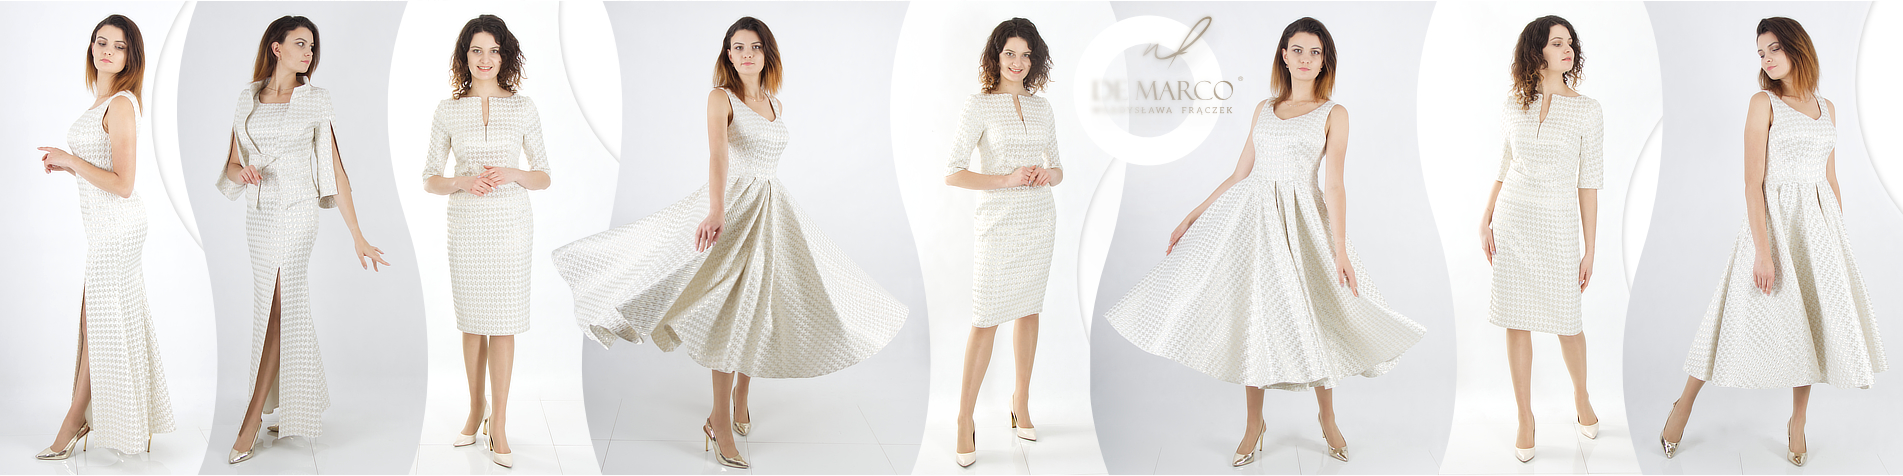 Ekskluzywne suknie i sukienki dla młodej pani od polskiej projektantki ubrań Pierwszej Damy Agaty Dudy. Najpiękniejsze stylizacje ślubne szyte na miarę w De Marco.